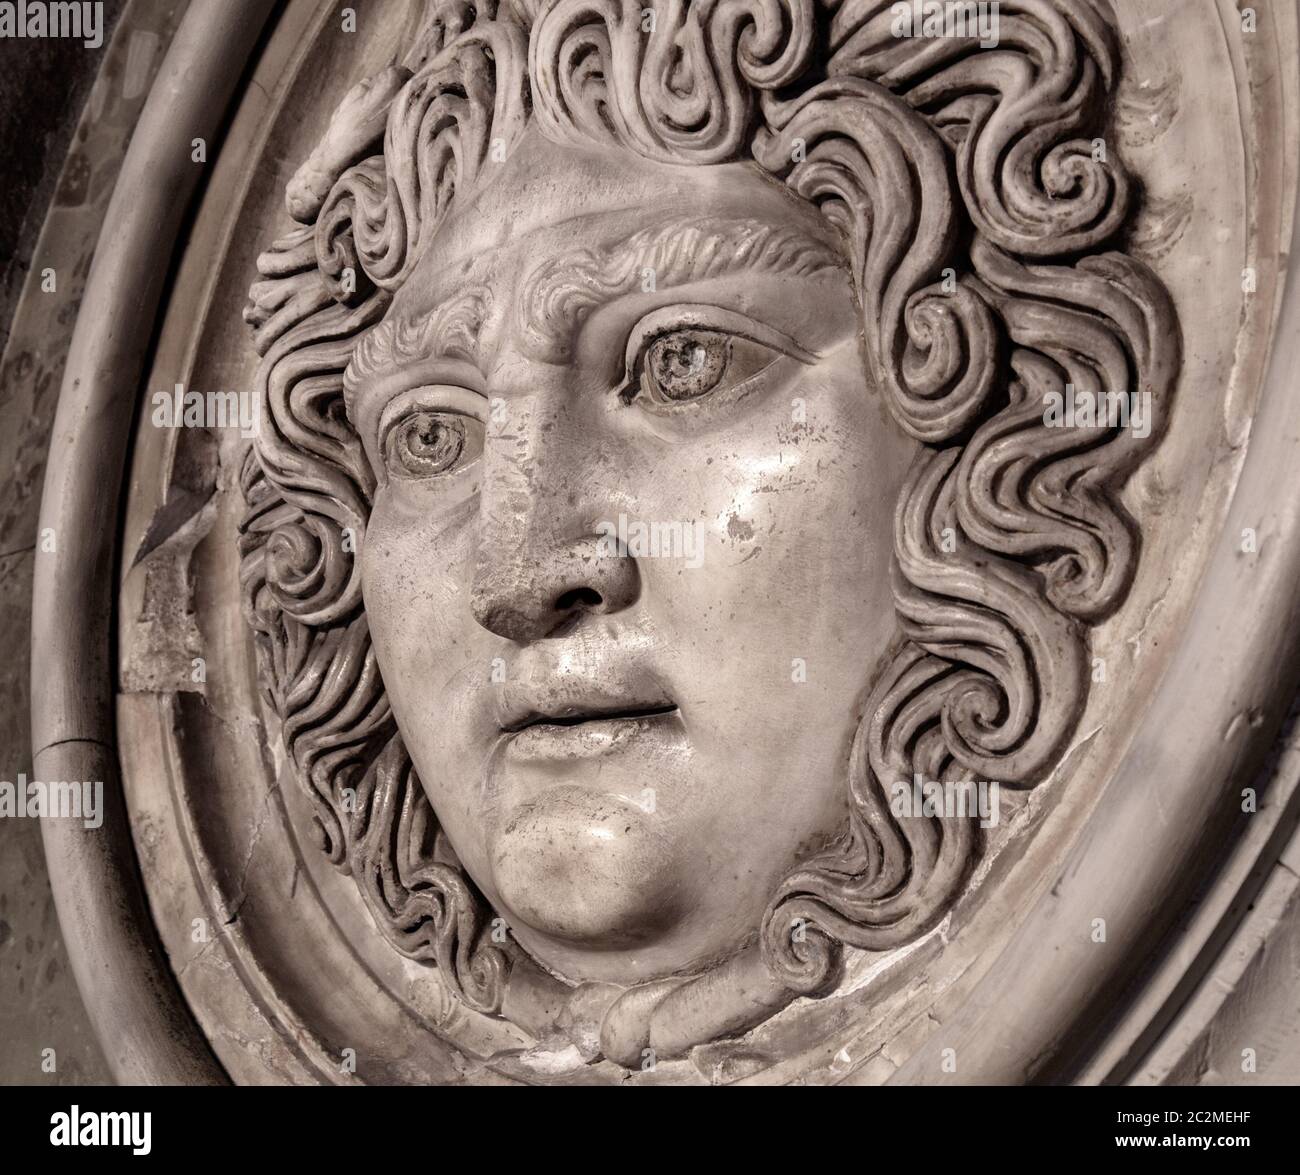 Medusa Gorgon Mask Statue Greek Mythology Monster Marble 